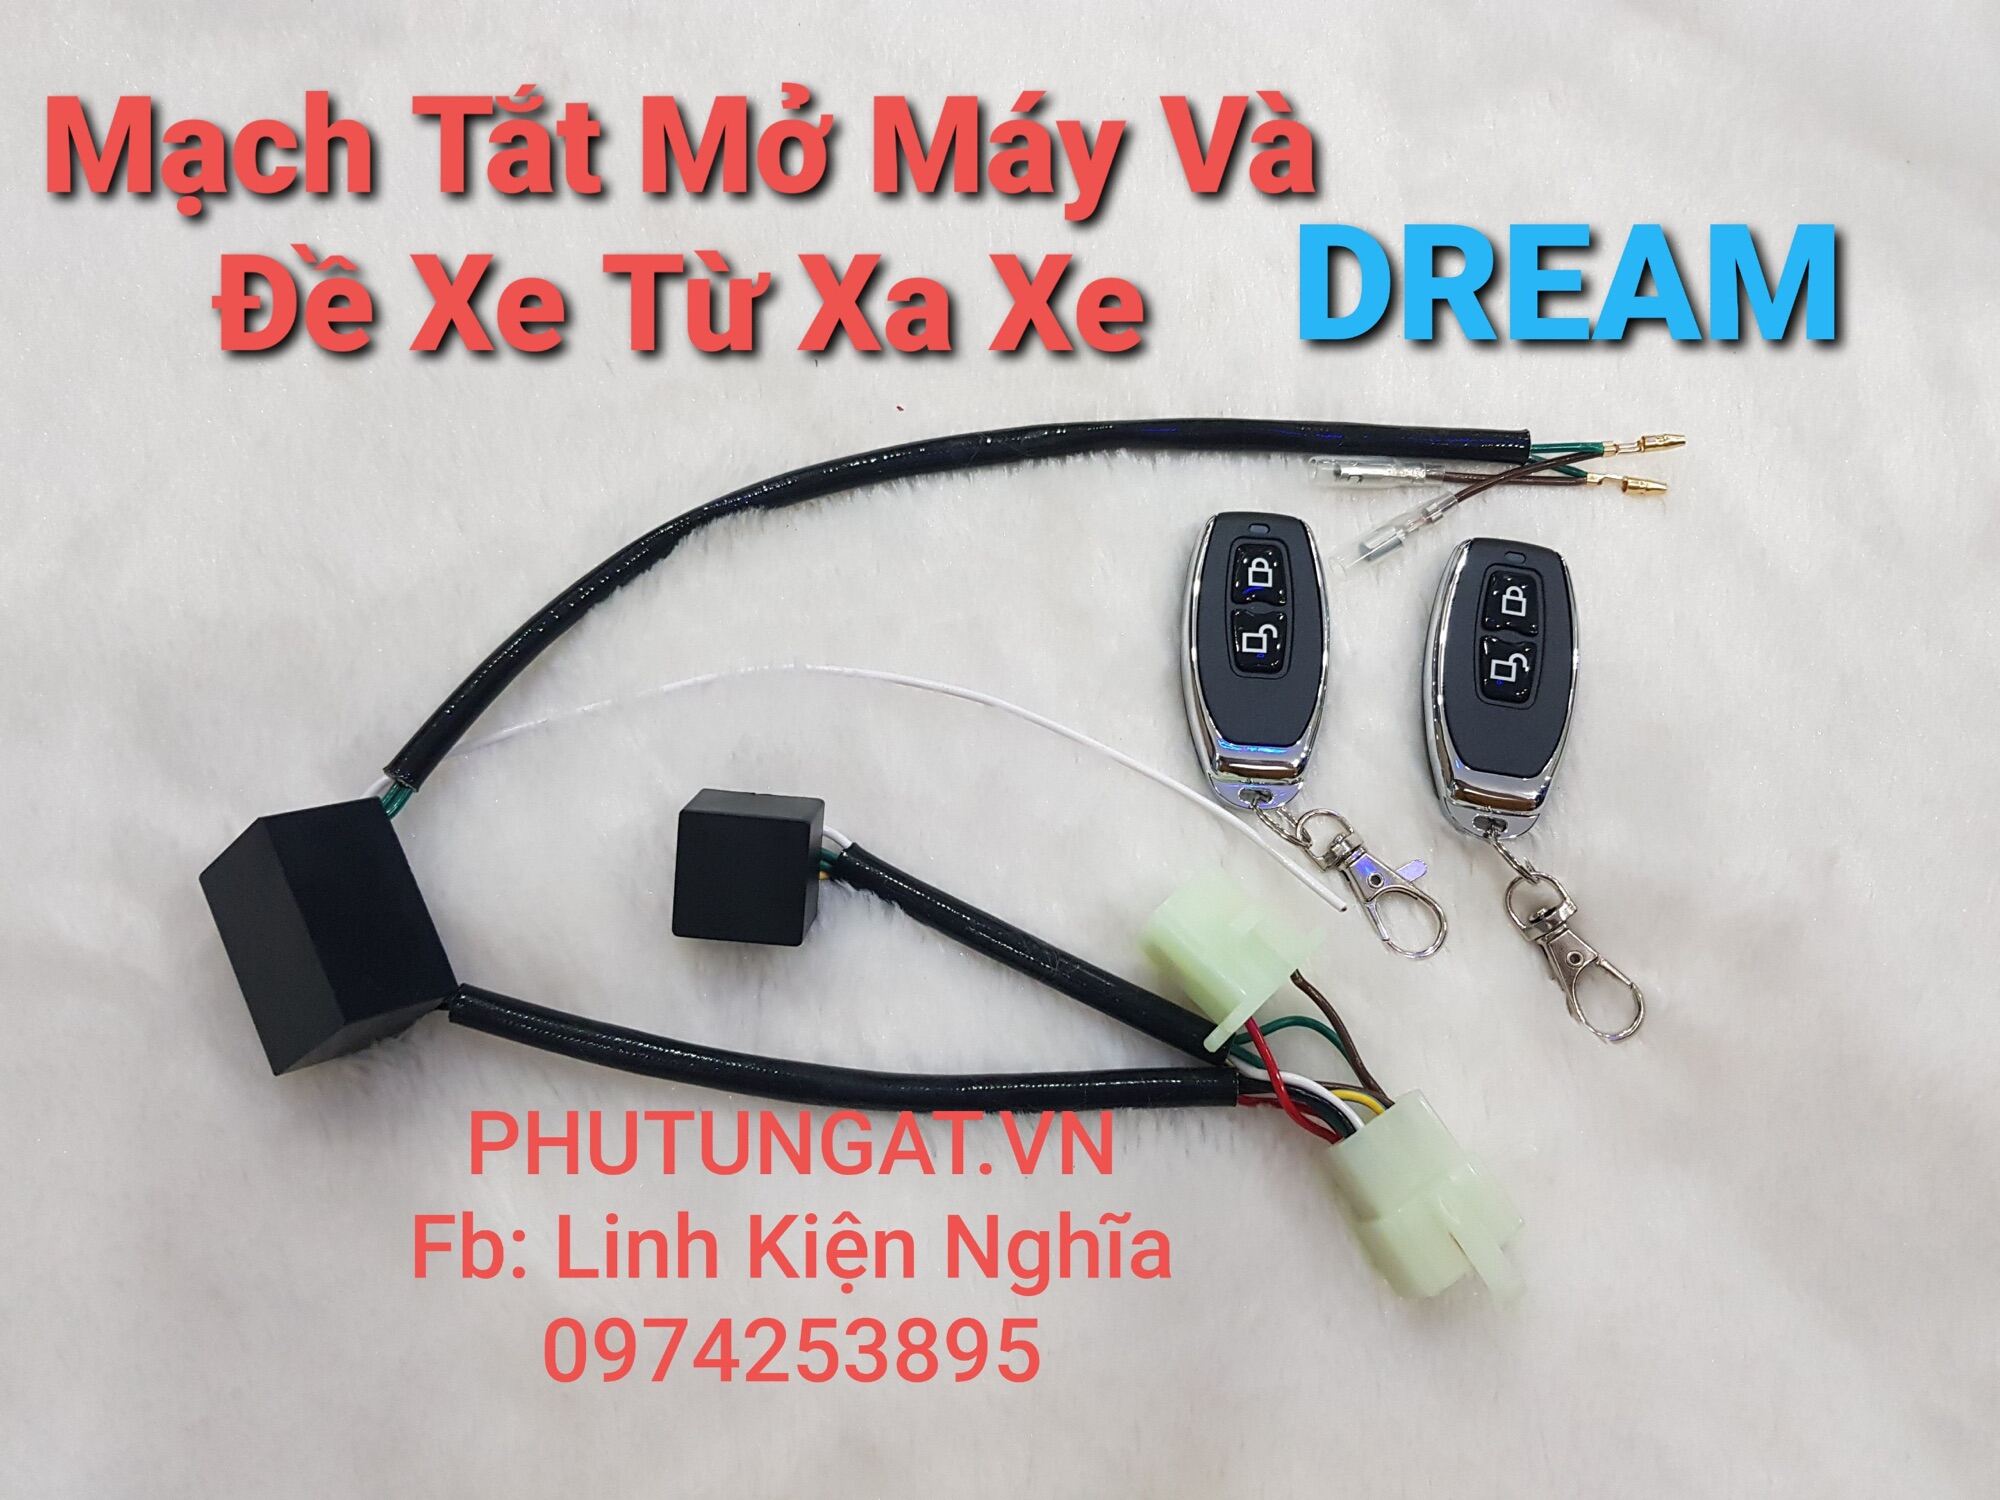 mạch năng lượng điện xe pháo máy honda dream  Dien Tu Viet Nam